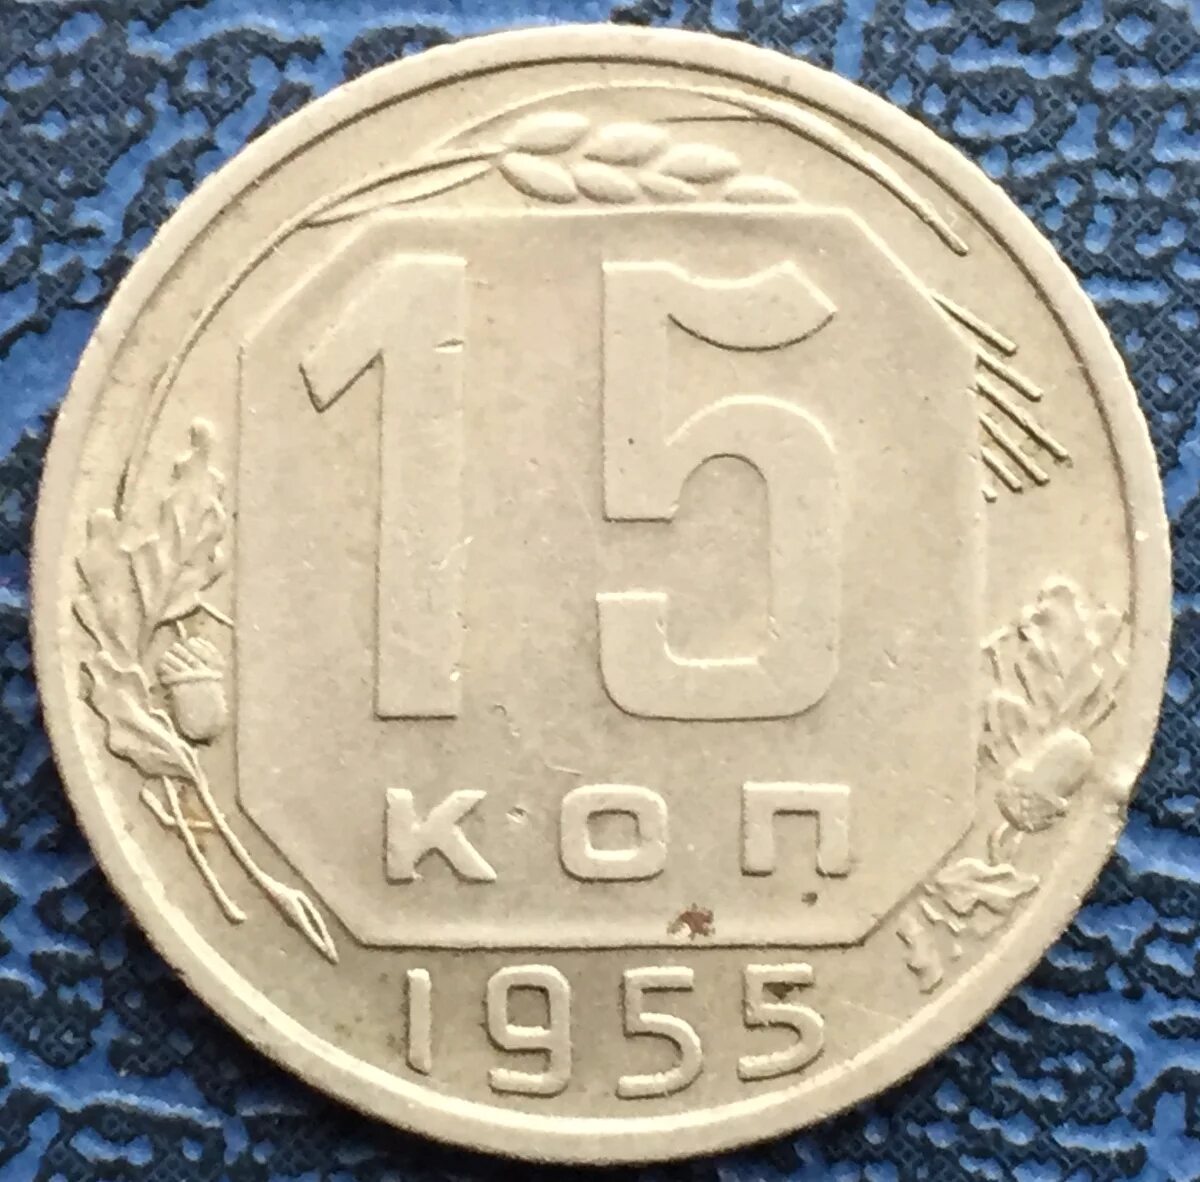 Пятнадцать копеек. Монета 15 копеек СССР. 15 Копеек 1955. Монета 5 копеек 1955. Монета СССР 1955.